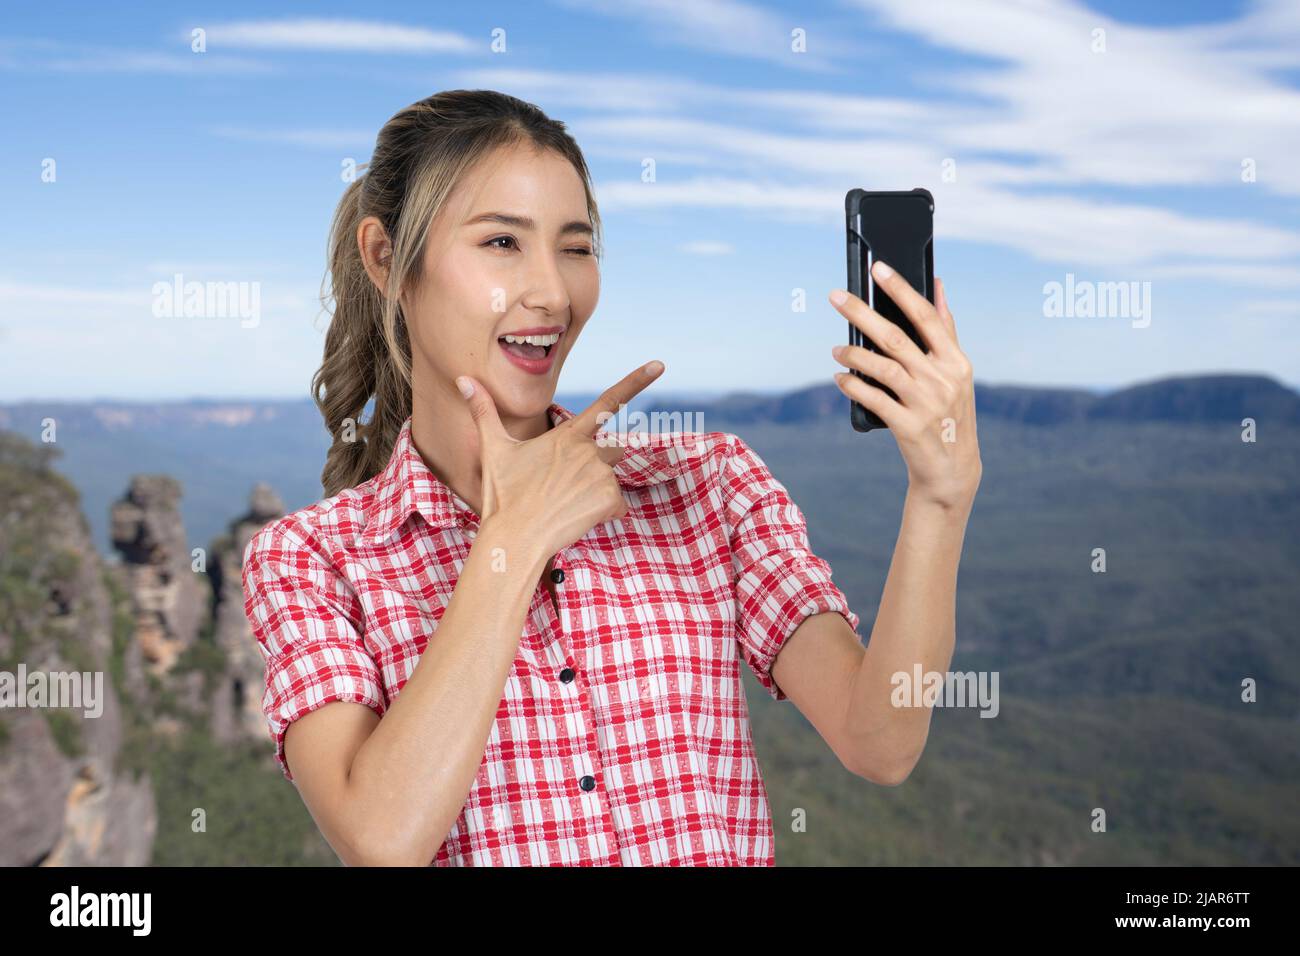 Le donne turisti amano prendere selfie in belle attrazioni naturali di montagna e cielo blu brillante. Foto Stock